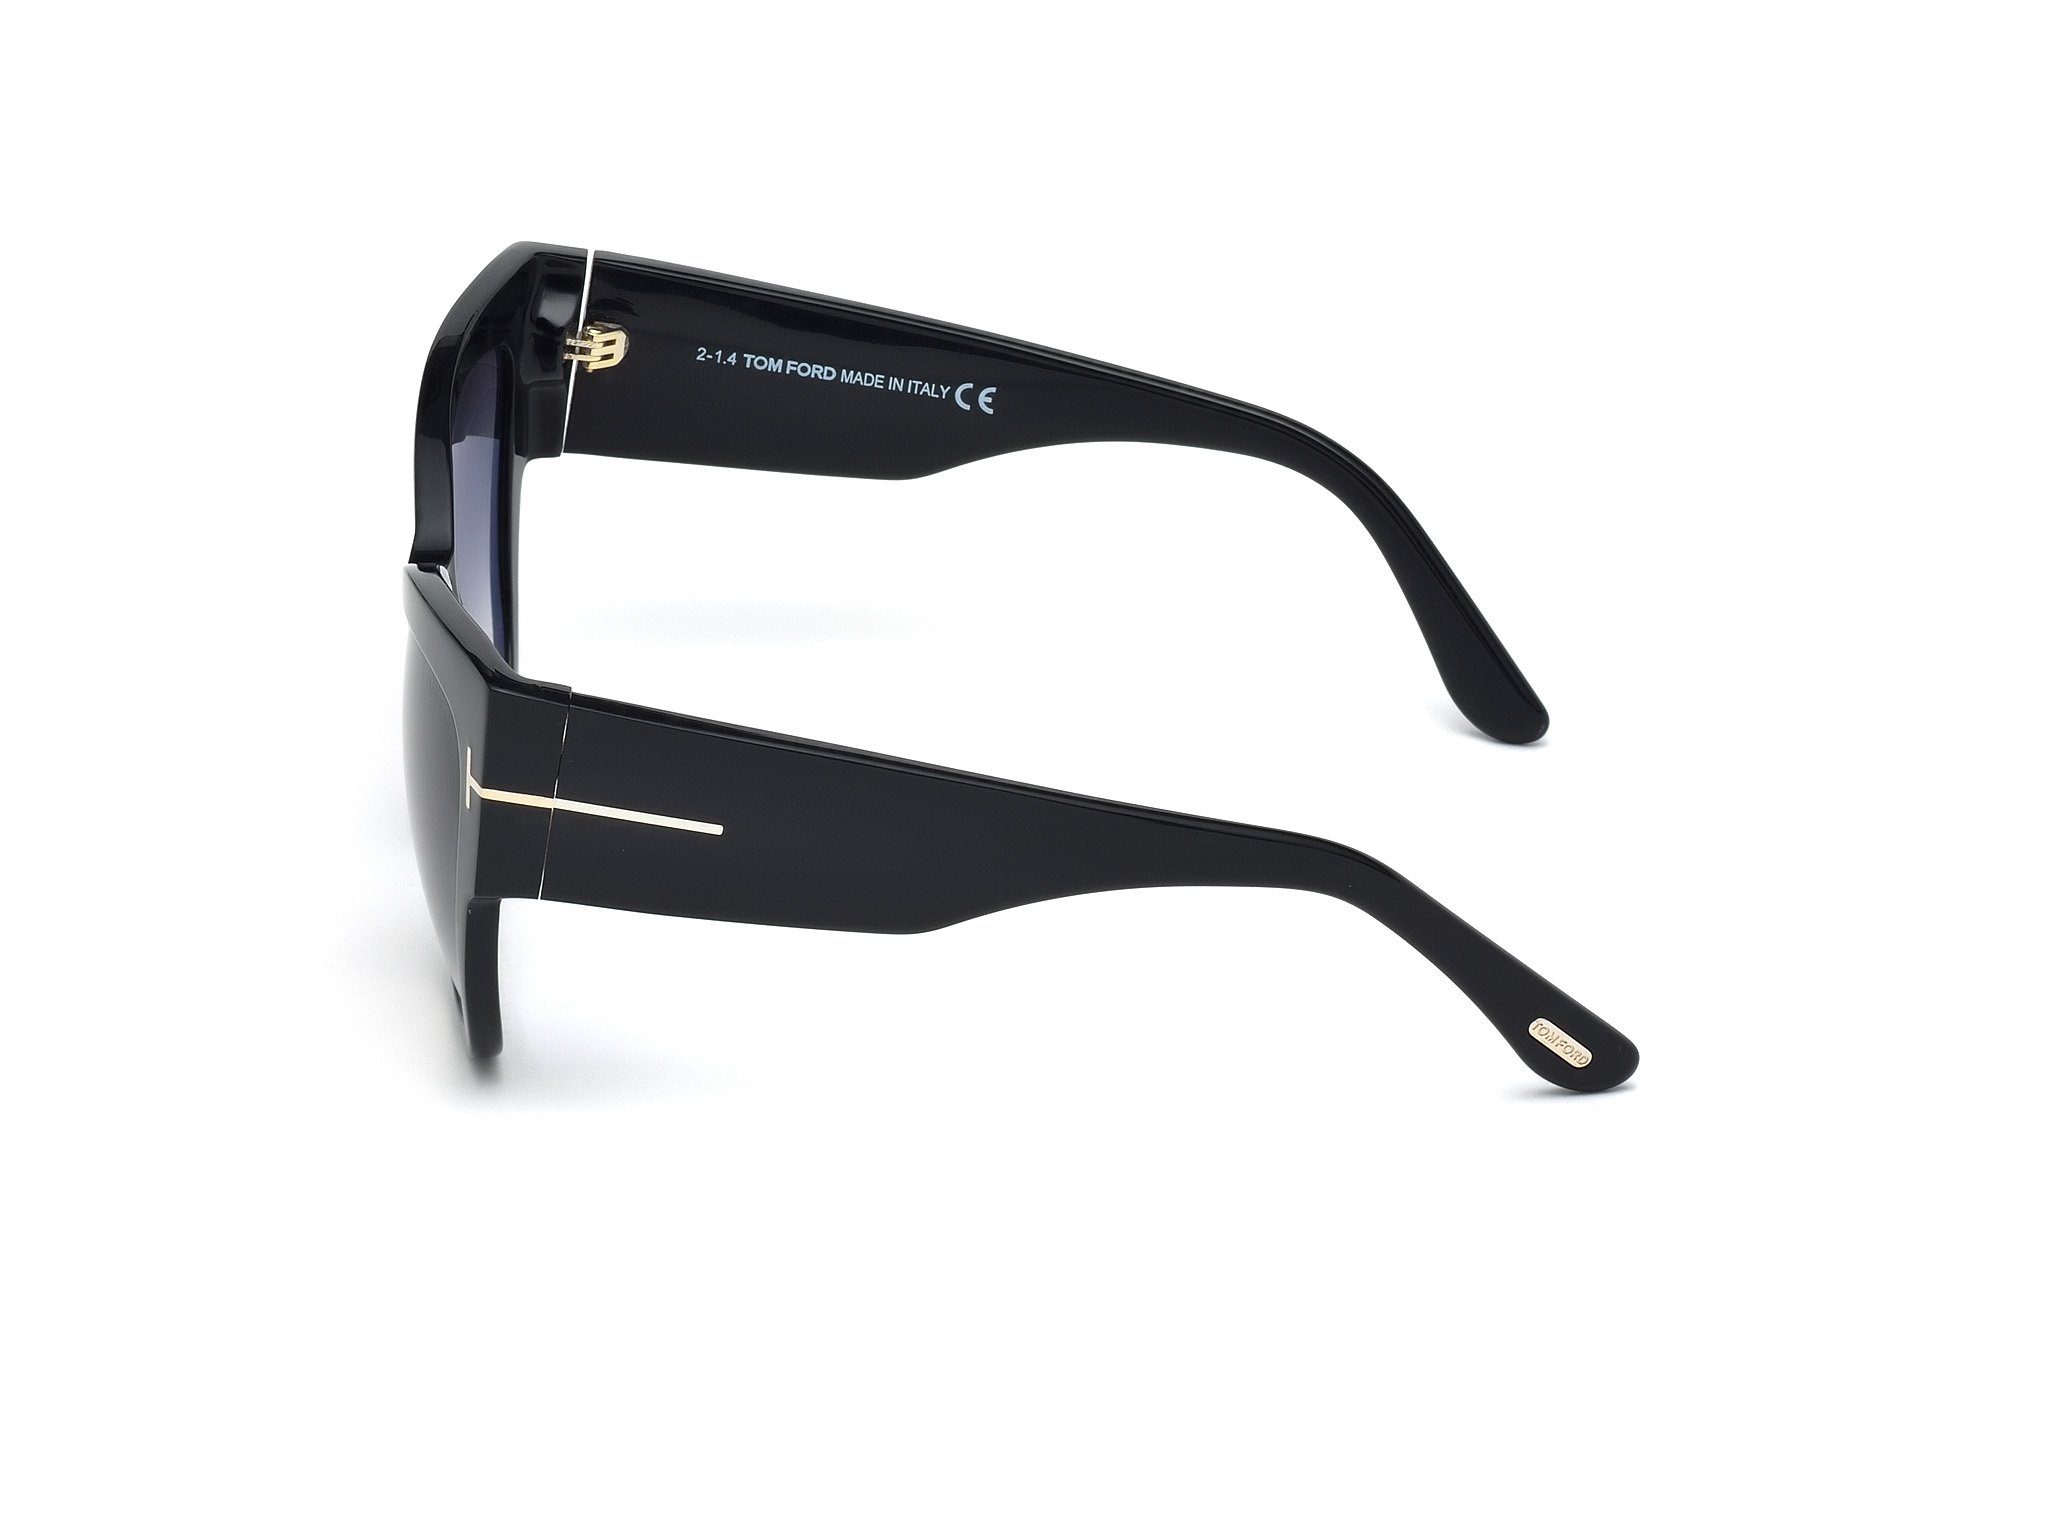 Das Bild zeigt die Sonnenbrille Anoushka FT0371 von der Marke Tom Ford in schwarz seitlich